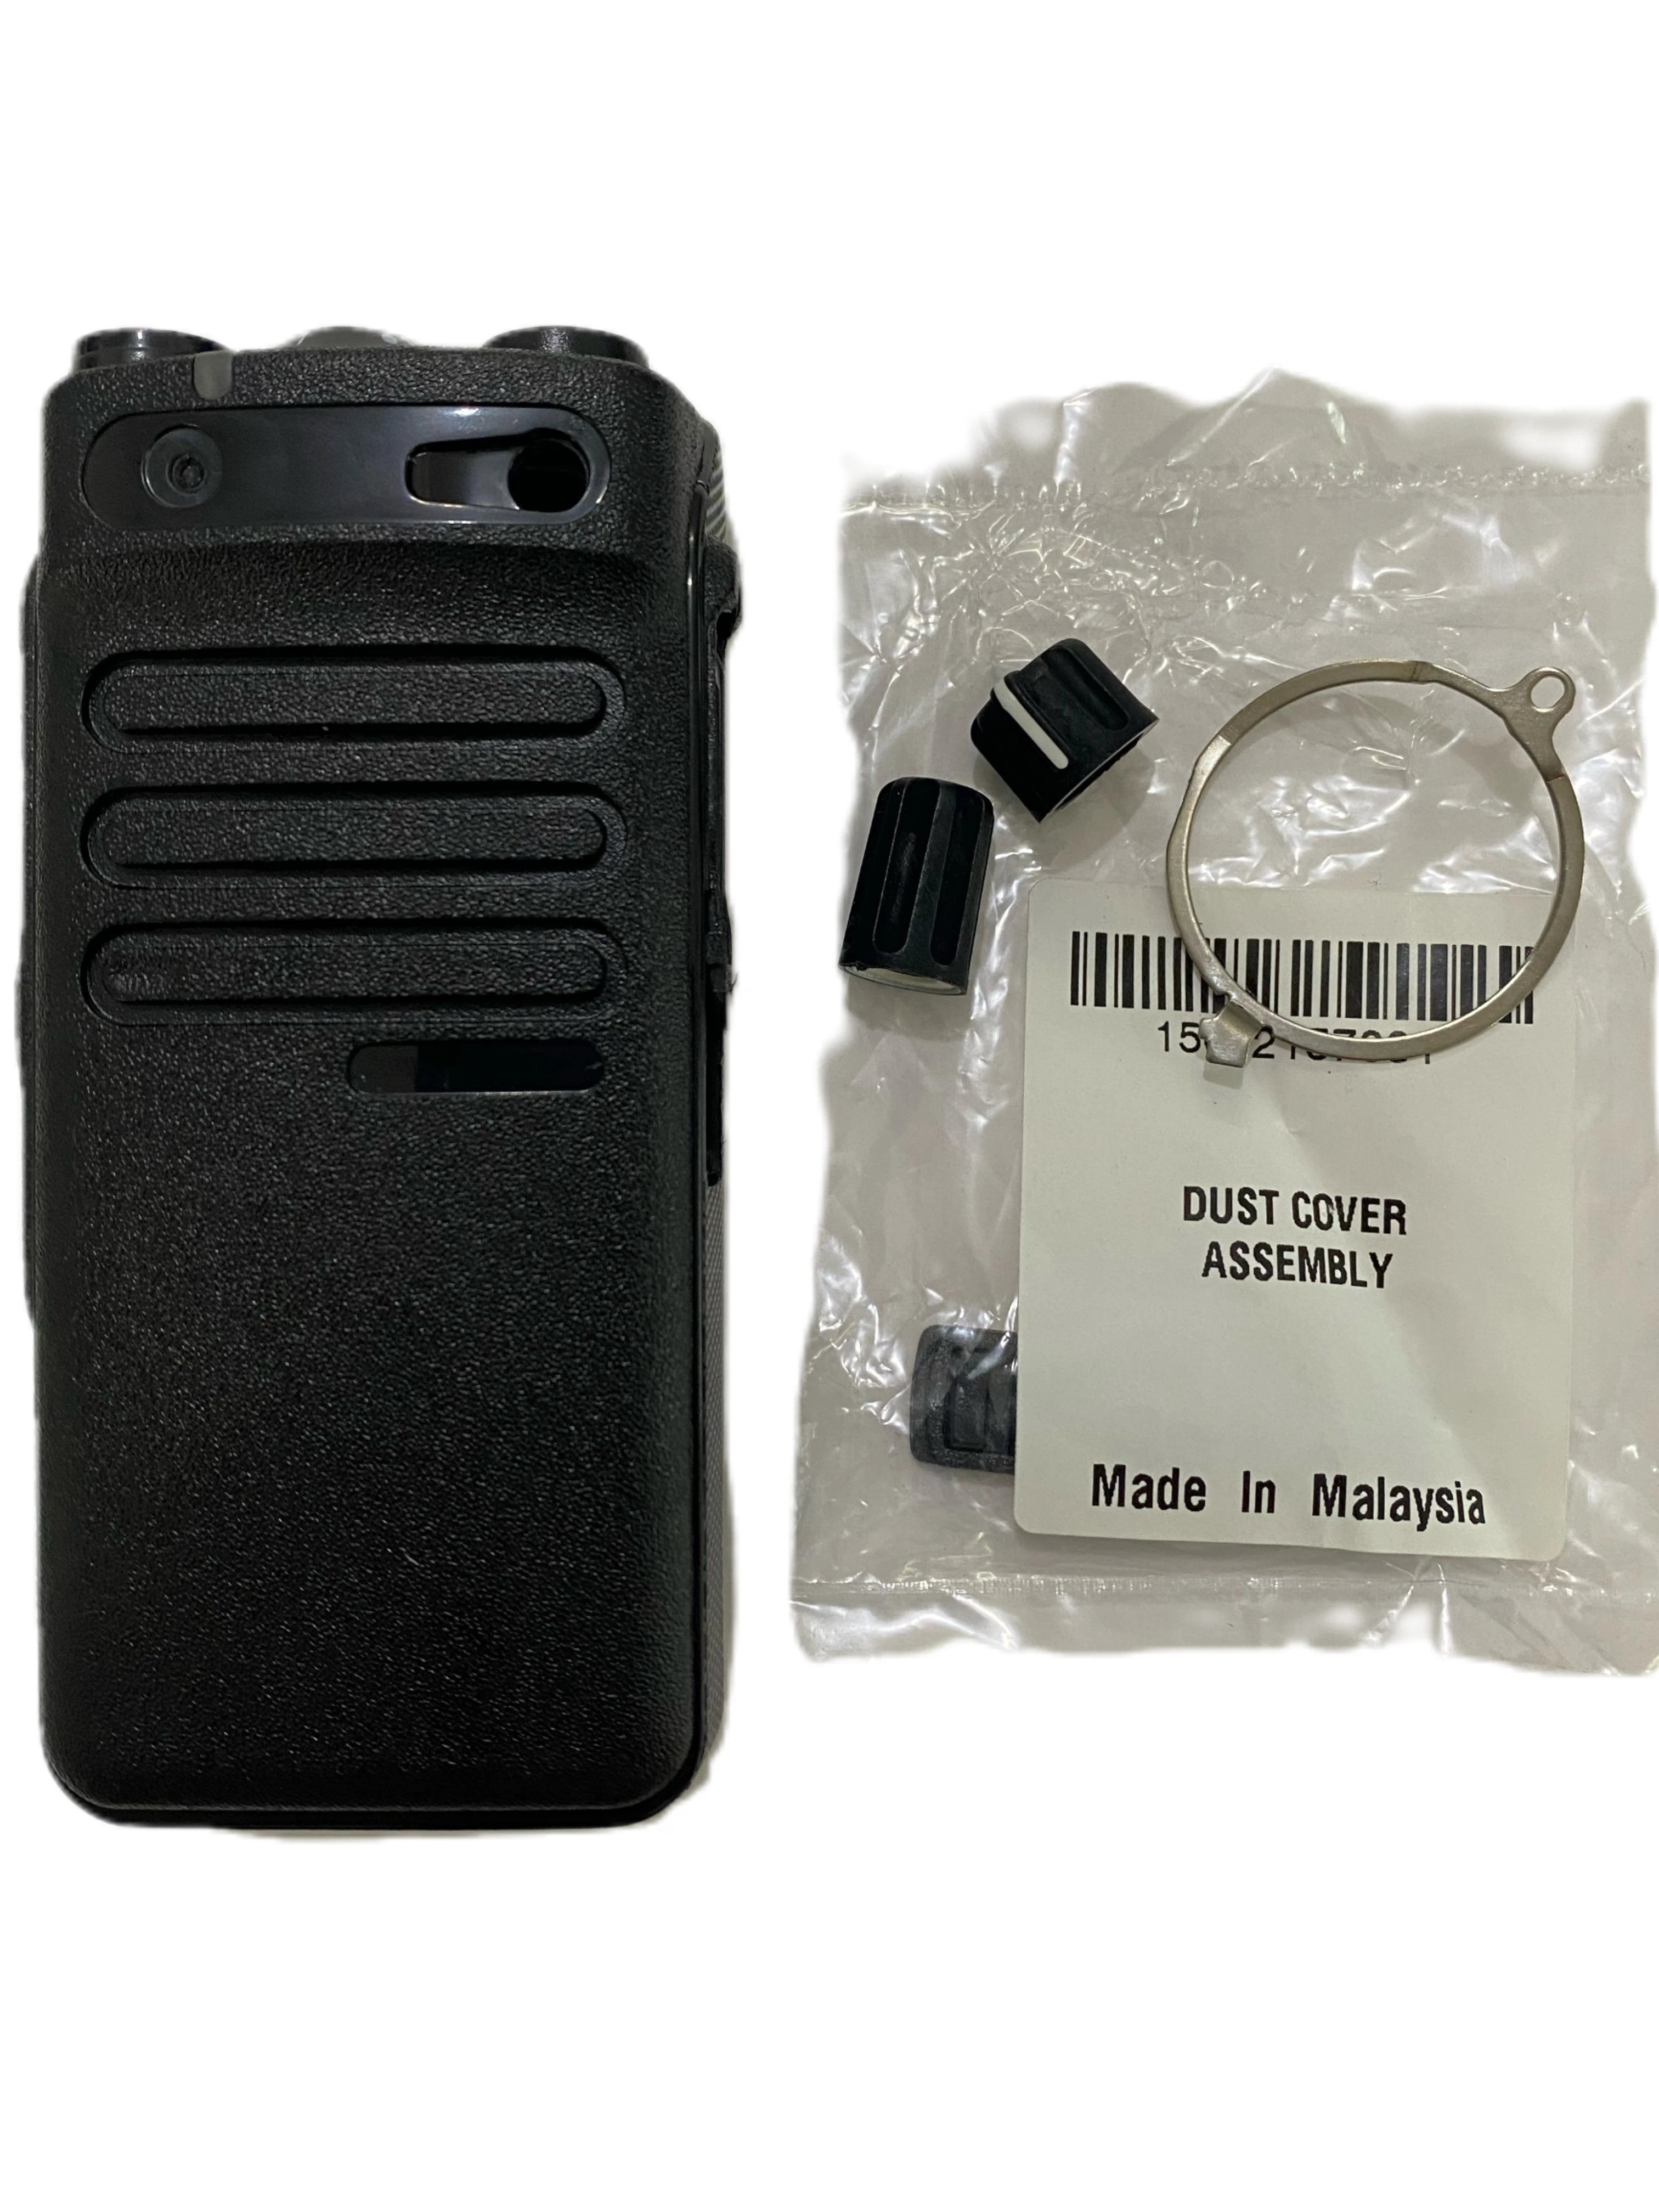 

Walkie-talkie Replacement Repair Case Housing Cover Kit For XiR P6600i DP2400e XPR3300e DEP550e Two Way Radios